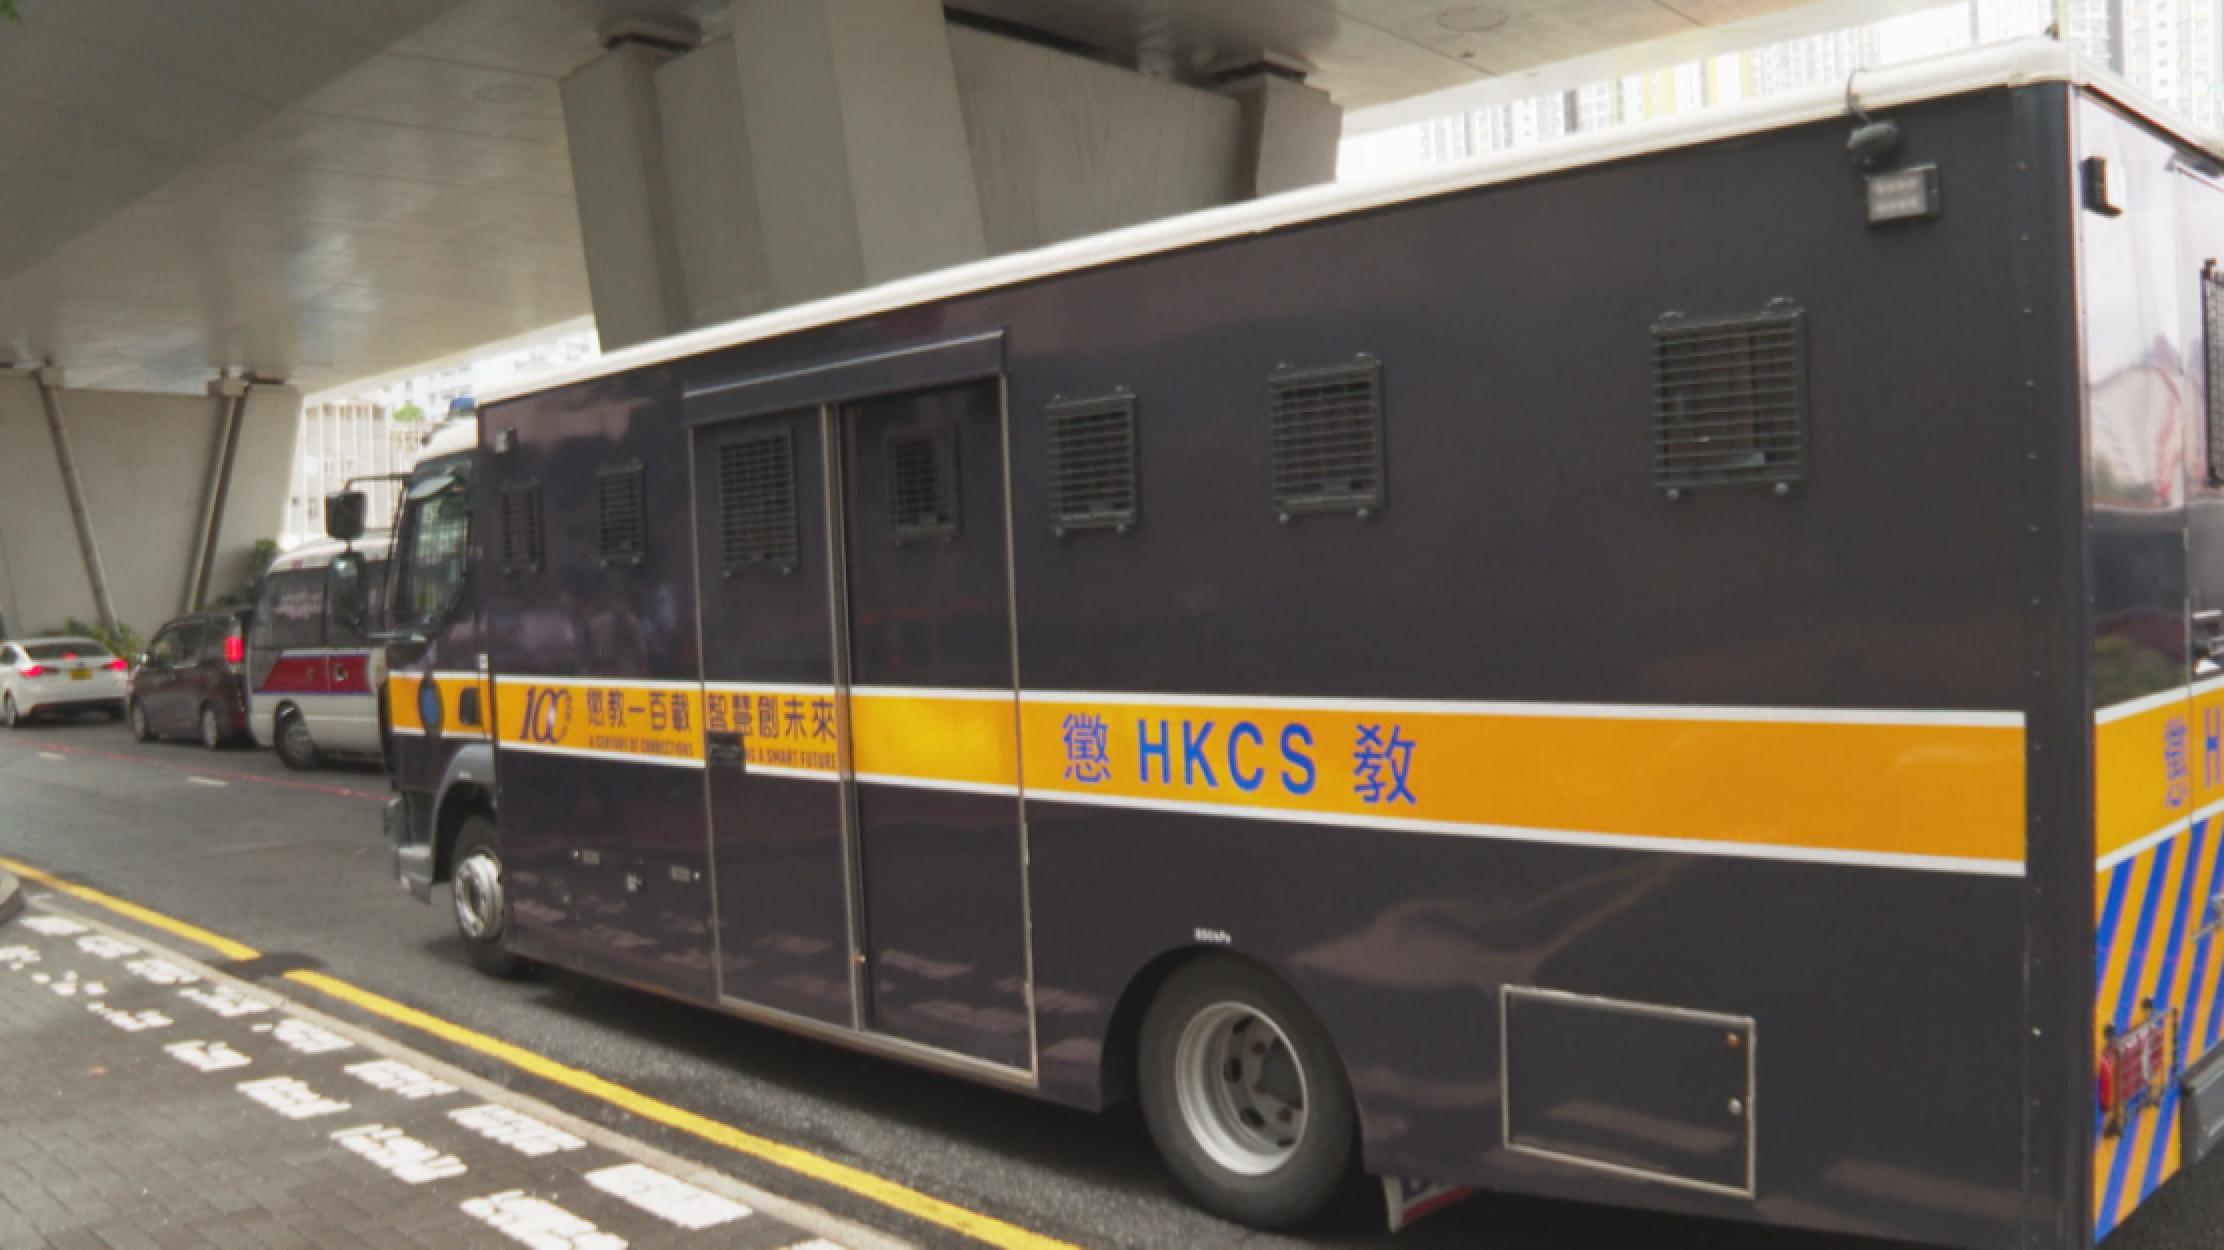 香港反中乱港分子戴耀廷等47人涉嫌 串谋颠覆国家政权罪 案开庭审理 中国青年网